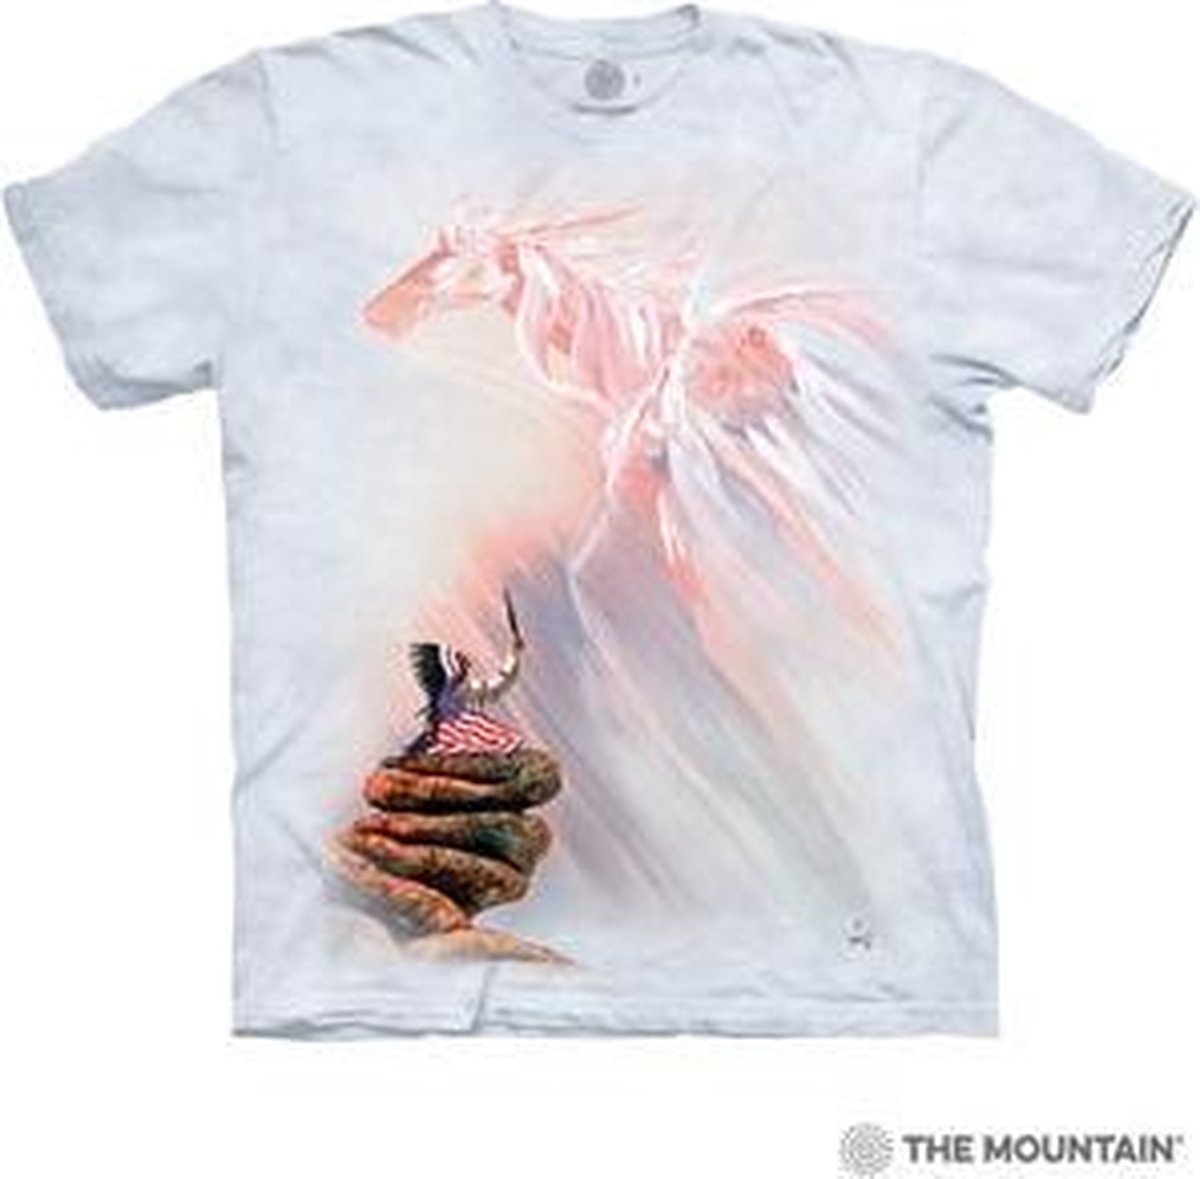 The mountain t shirt